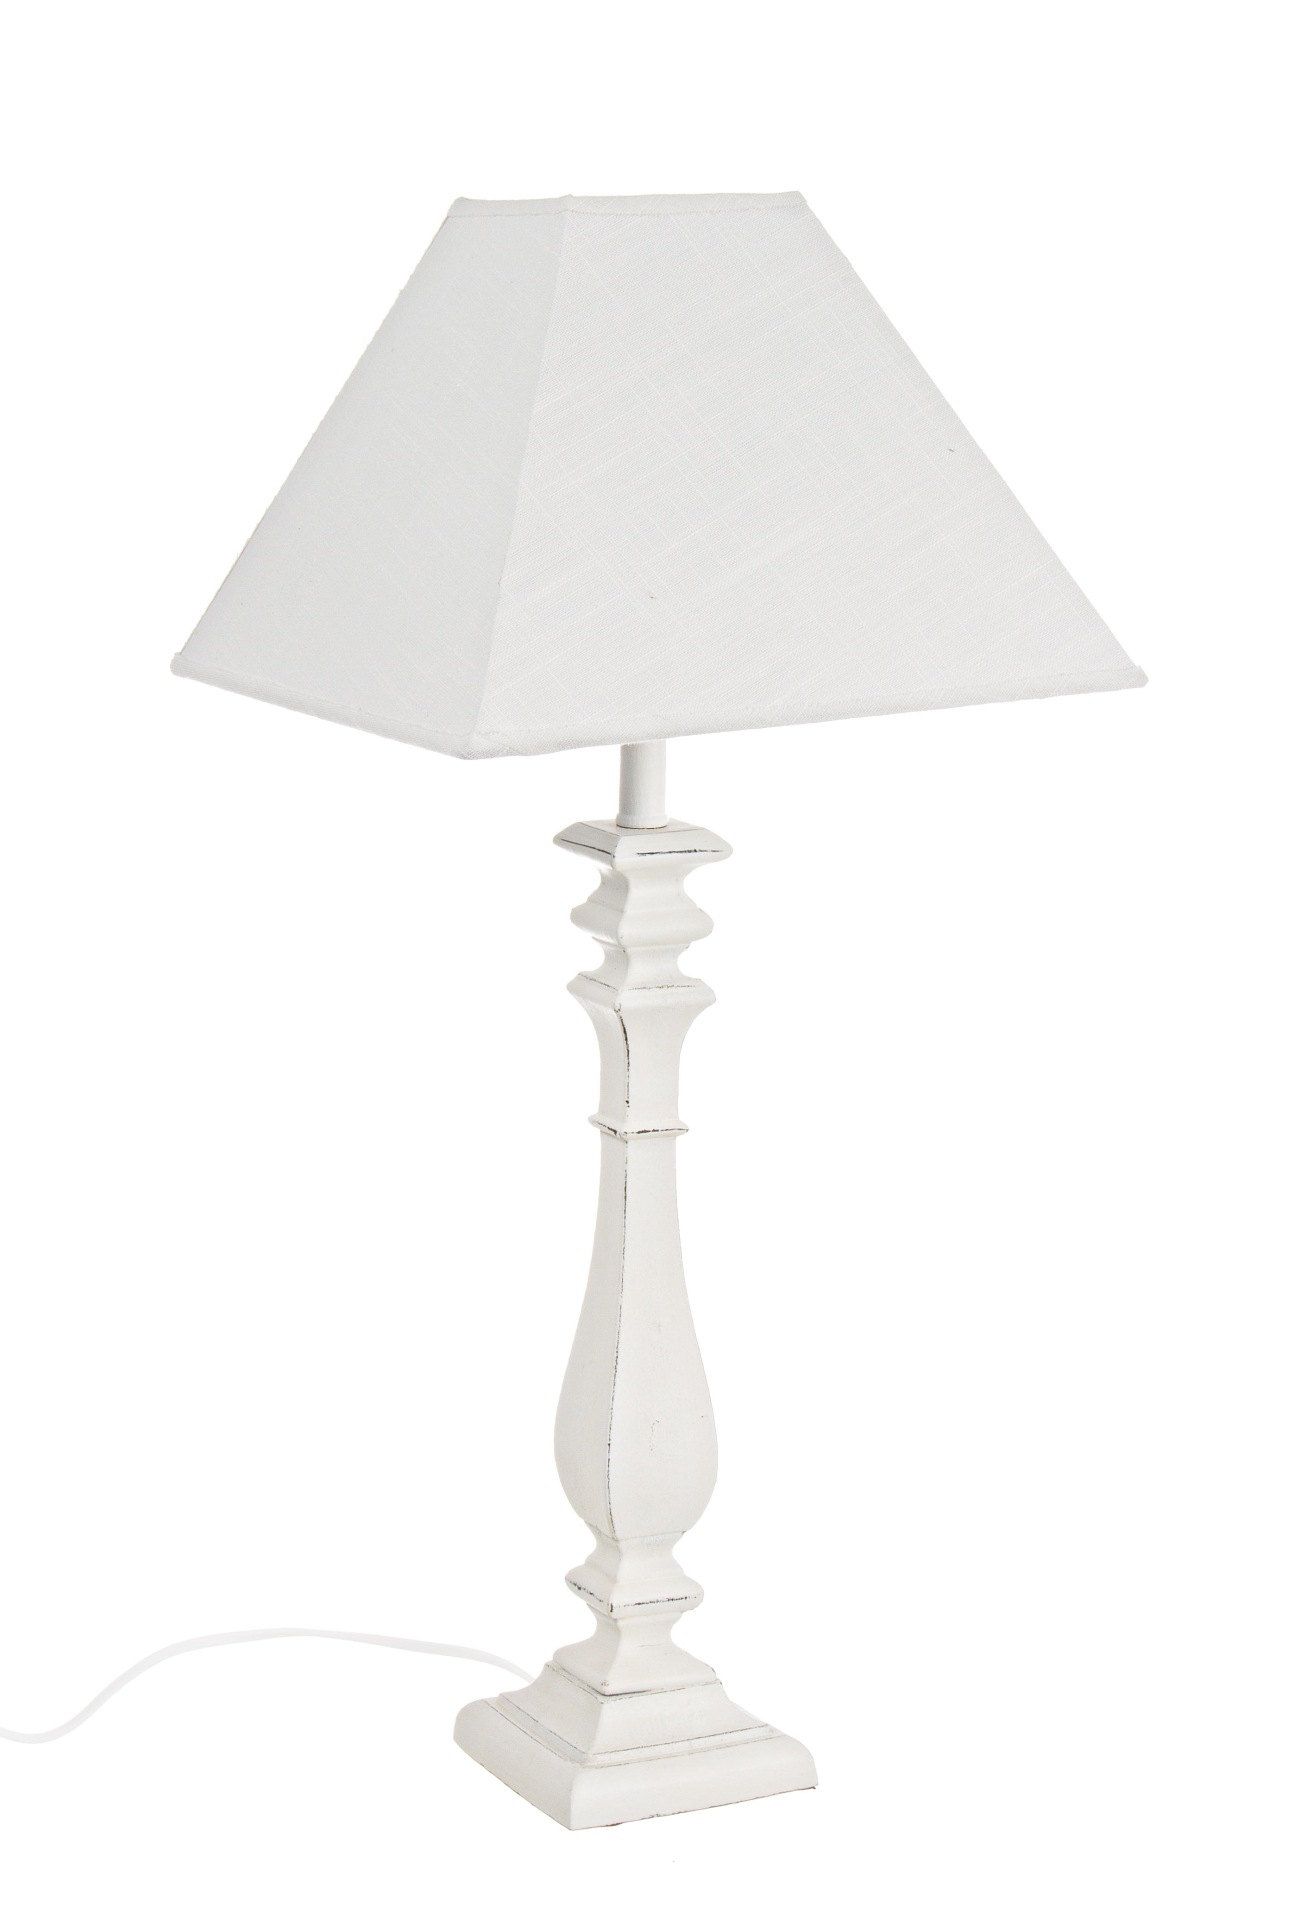 Die Tischleuchte Ajaccio überzeugt mit ihrem klassischen Design. Gefertigt wurde sie aus MDF, welches einen weißen Farbton besitzt. Der Lampenschirm ist aus Baumwolle und hat eine weiße Farbe. Die Lampe besitzt eine Höhe von 52 cm.